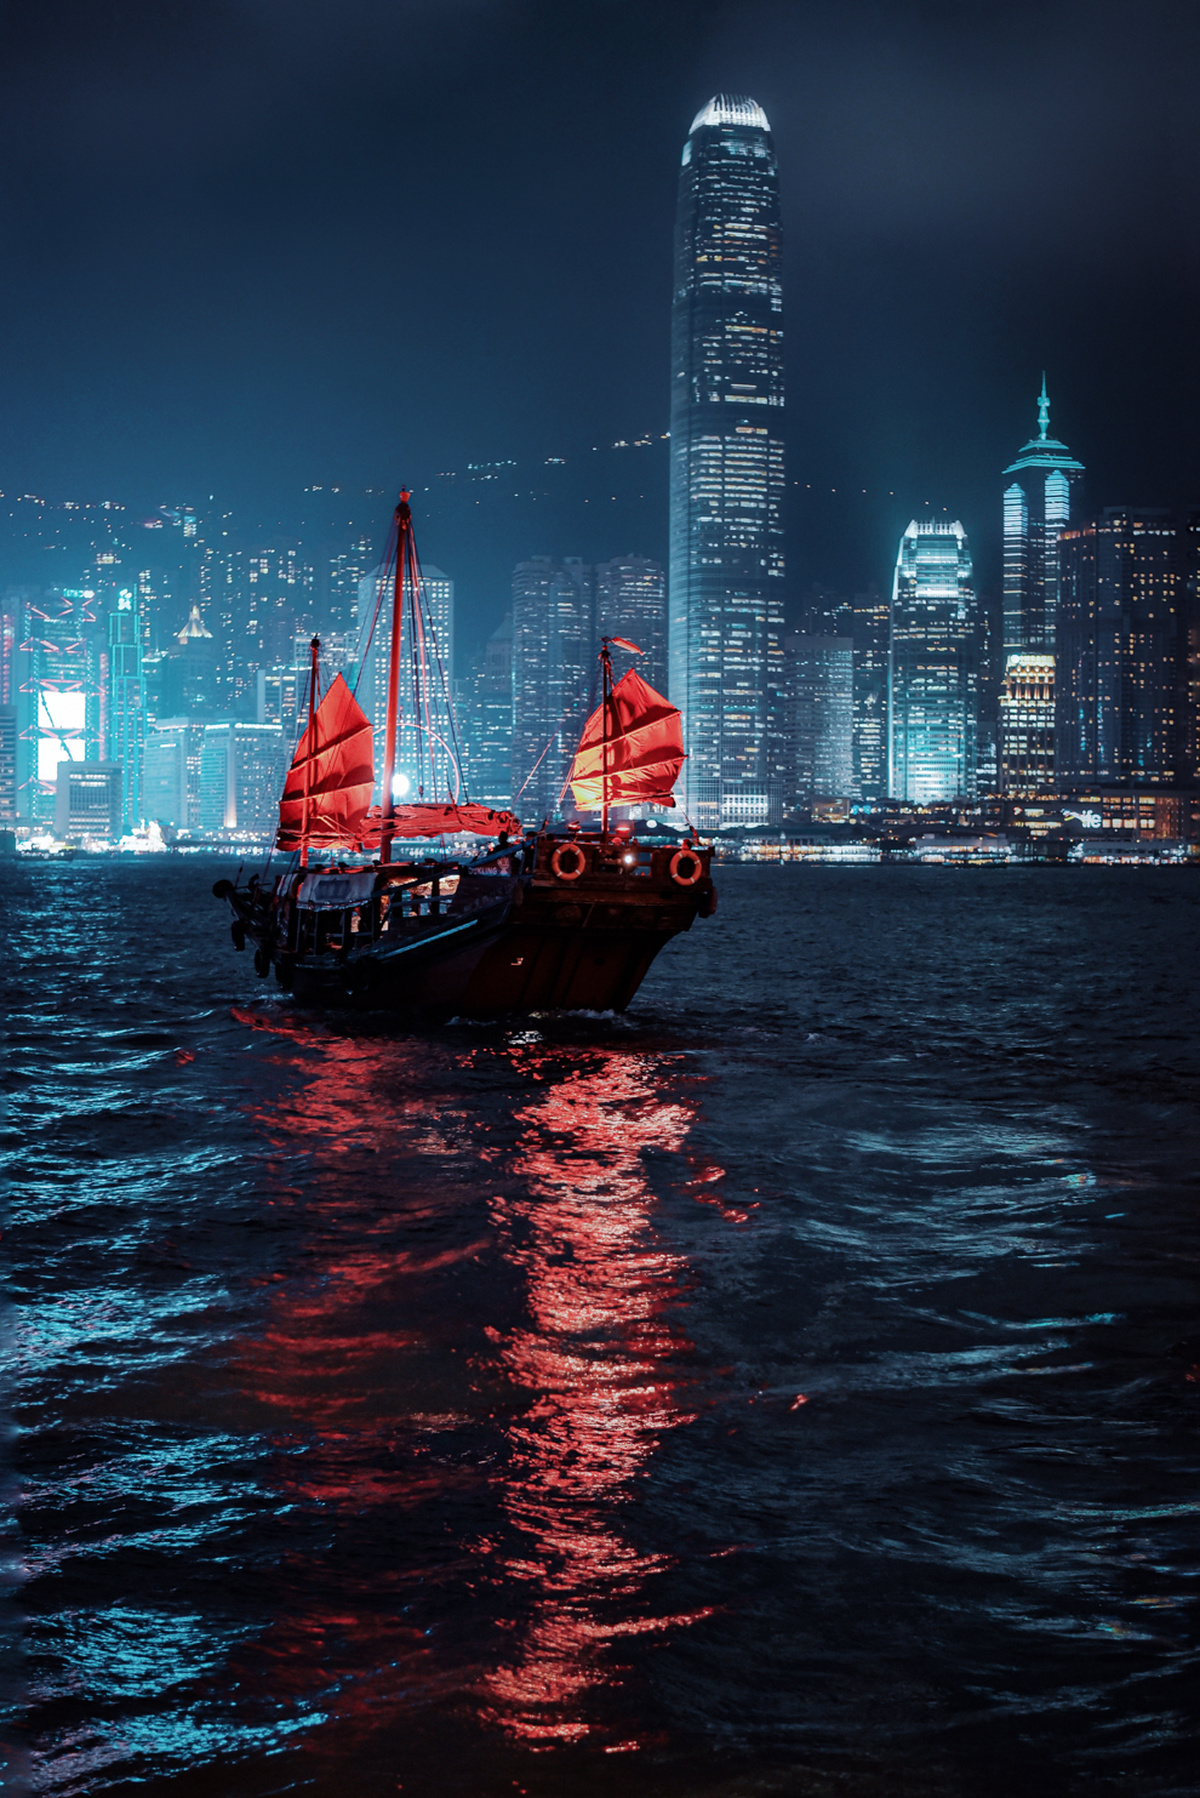 夜晚在大城市前方漂浮着一艘大船 船上有红色的帆。